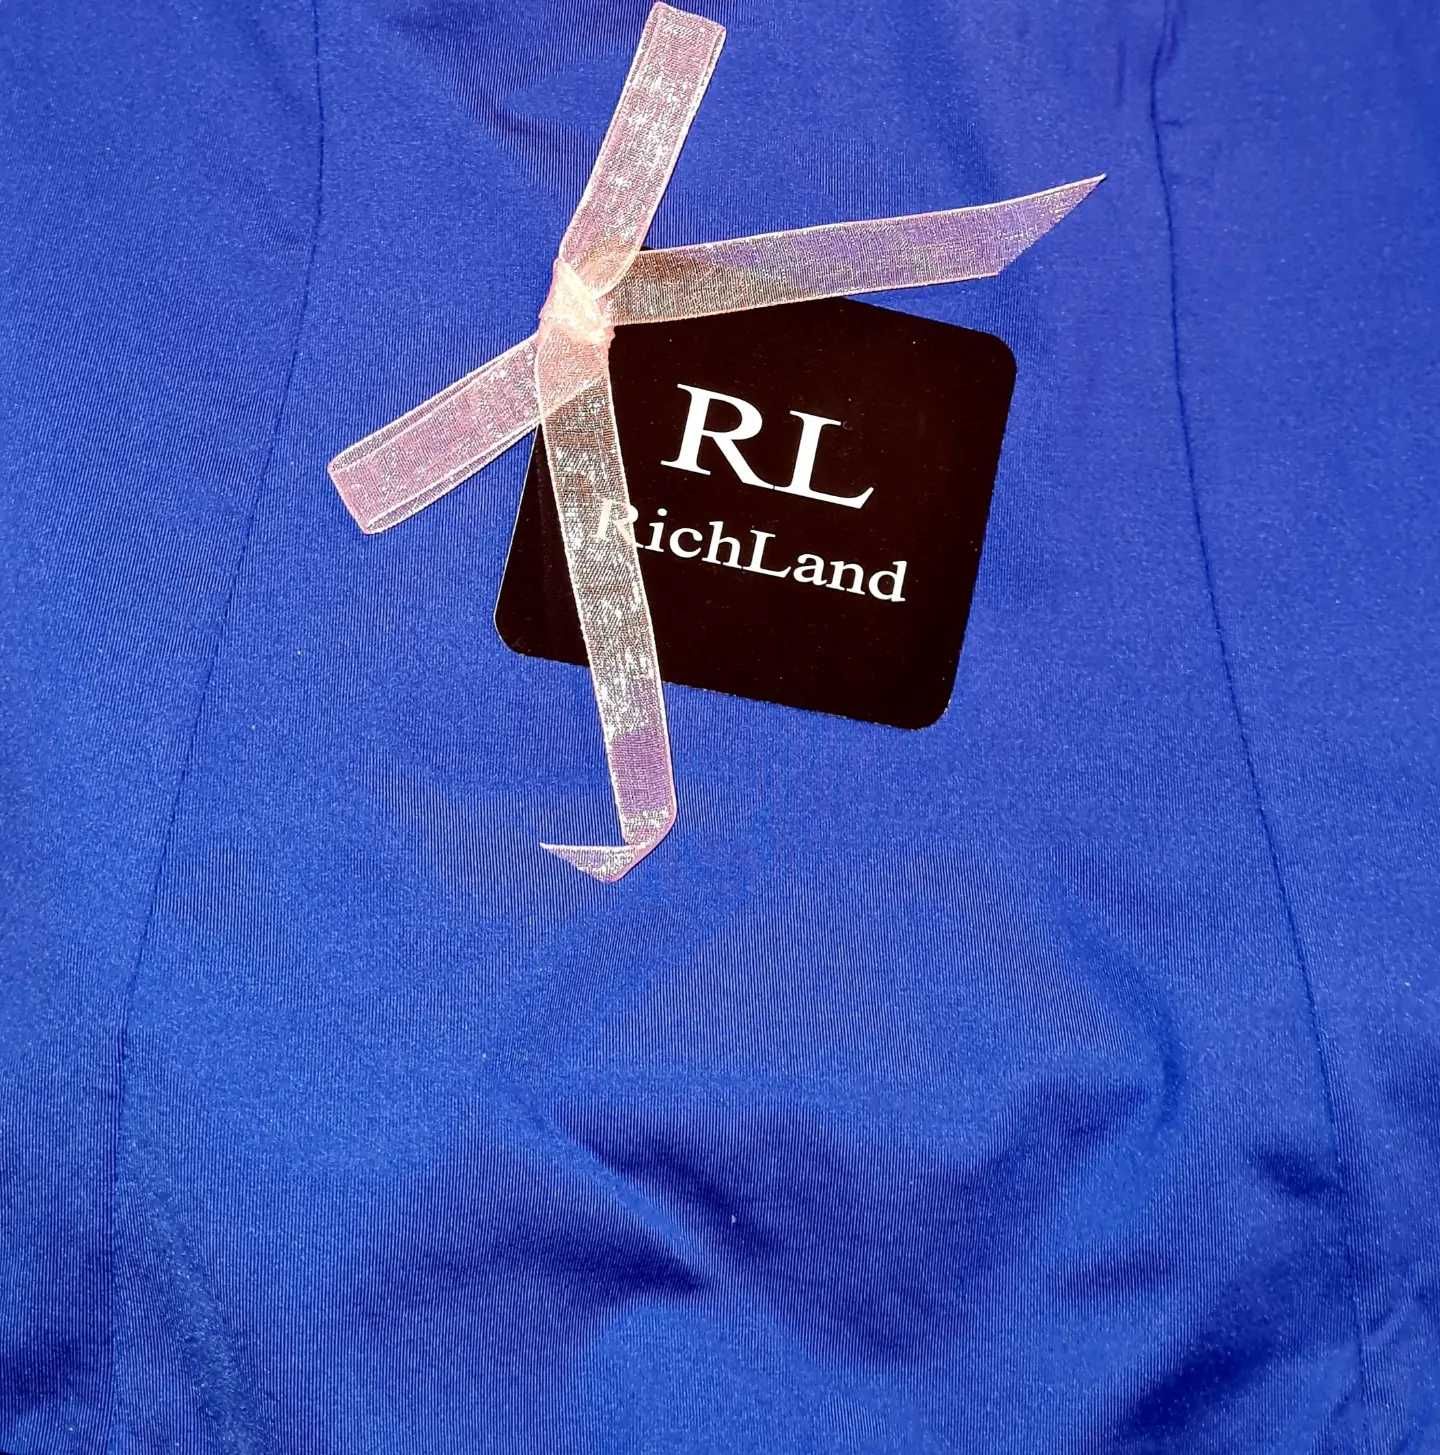 Боди син цвят с твърда чашка, Richland boutique